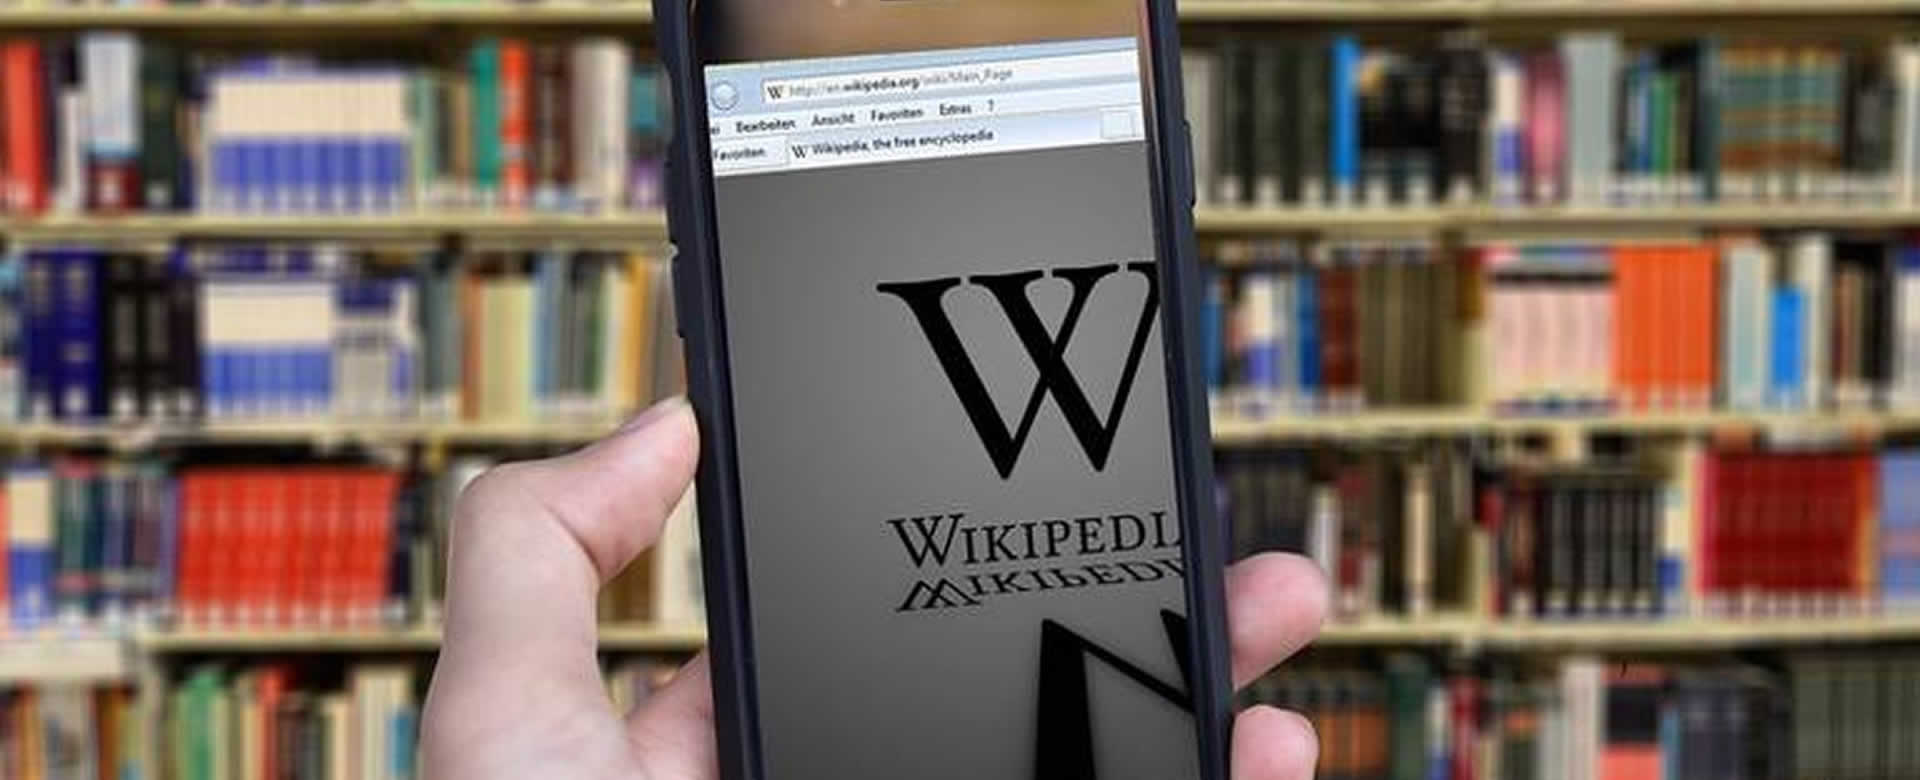 ¿Adiós Facebook? Wikipedia crea su propia red social libre de publicidad